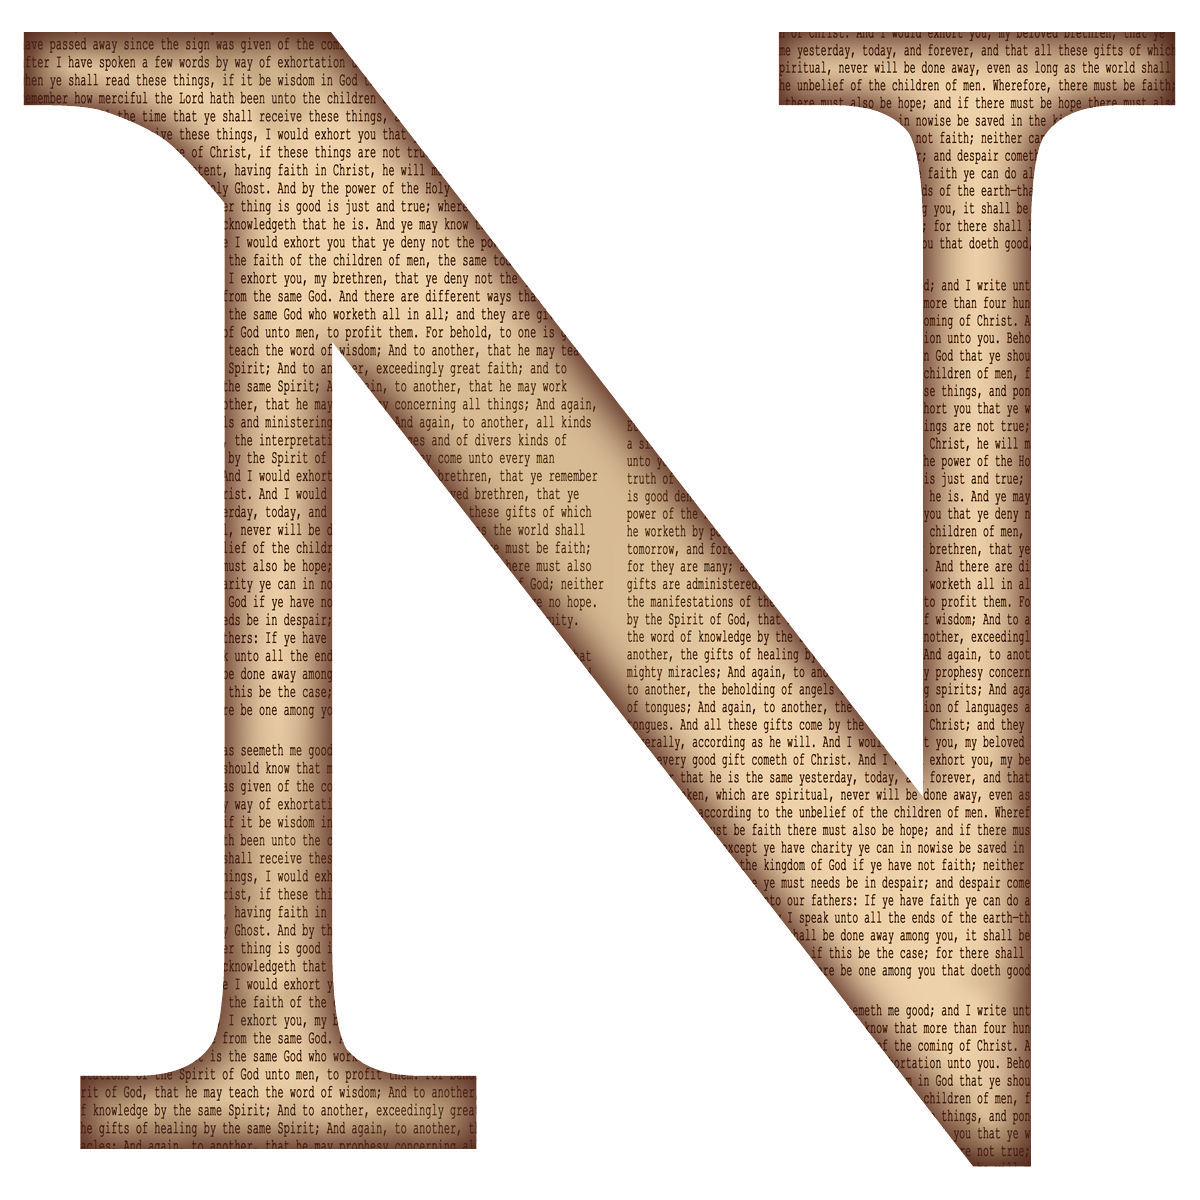 La lettera N